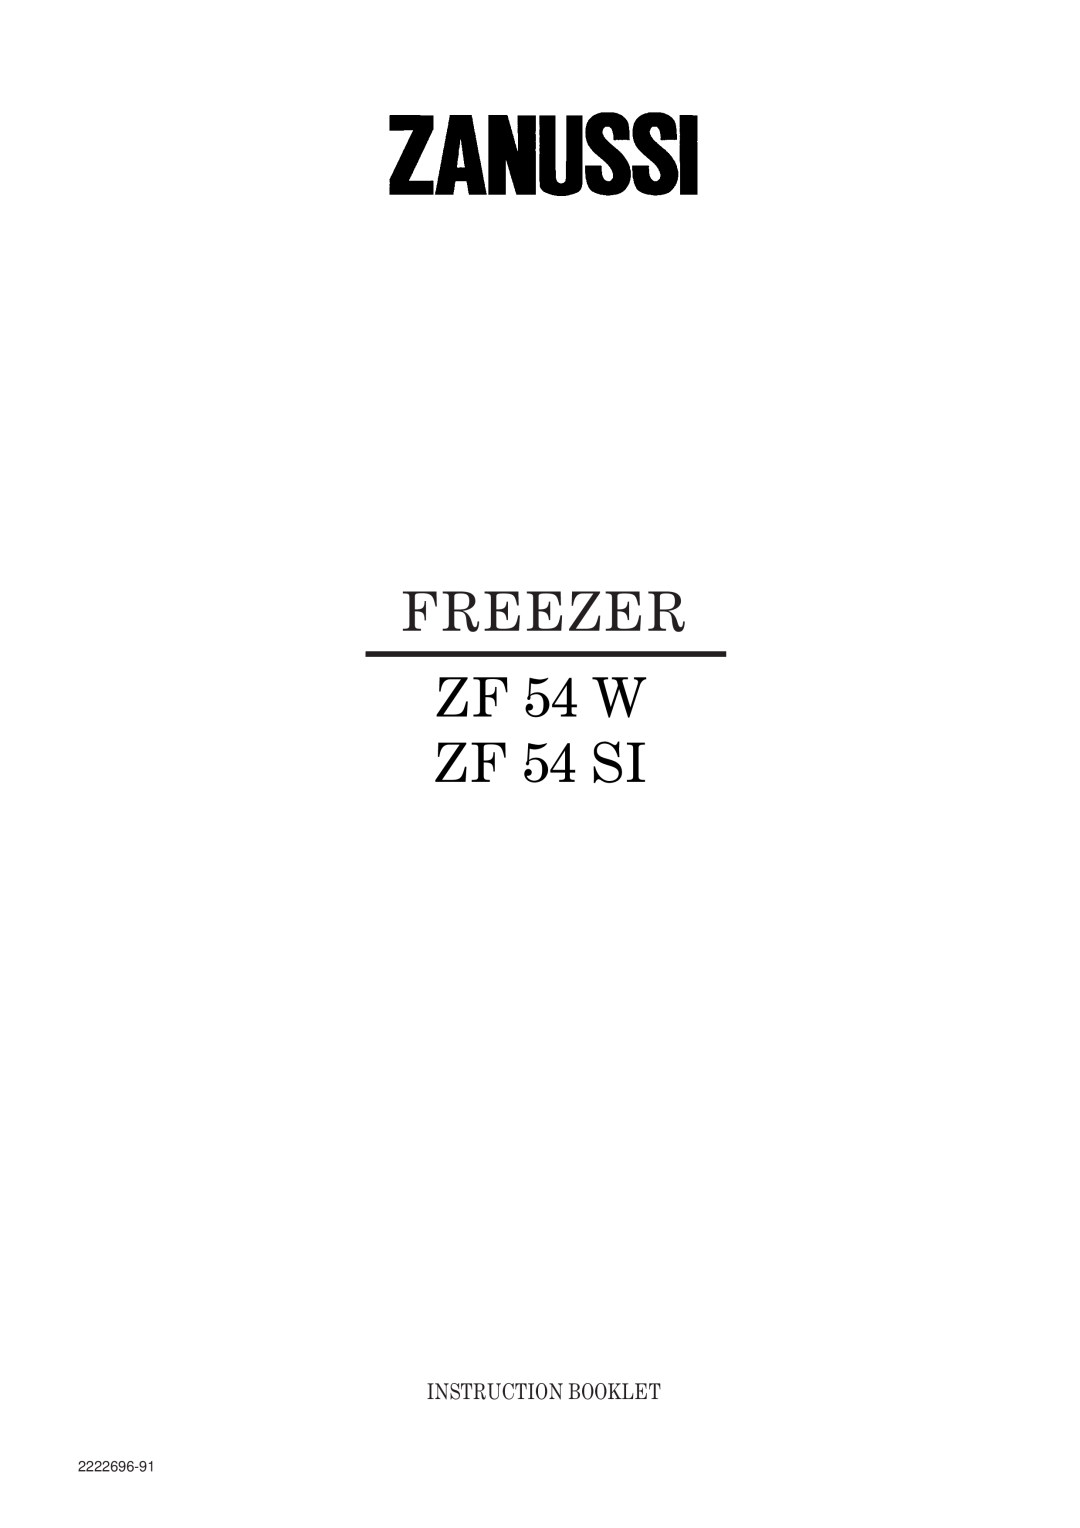 Zanussi manual FREEZER ZF 54 W ZF 54 SI, Instruction Booklet, 2222696-91 